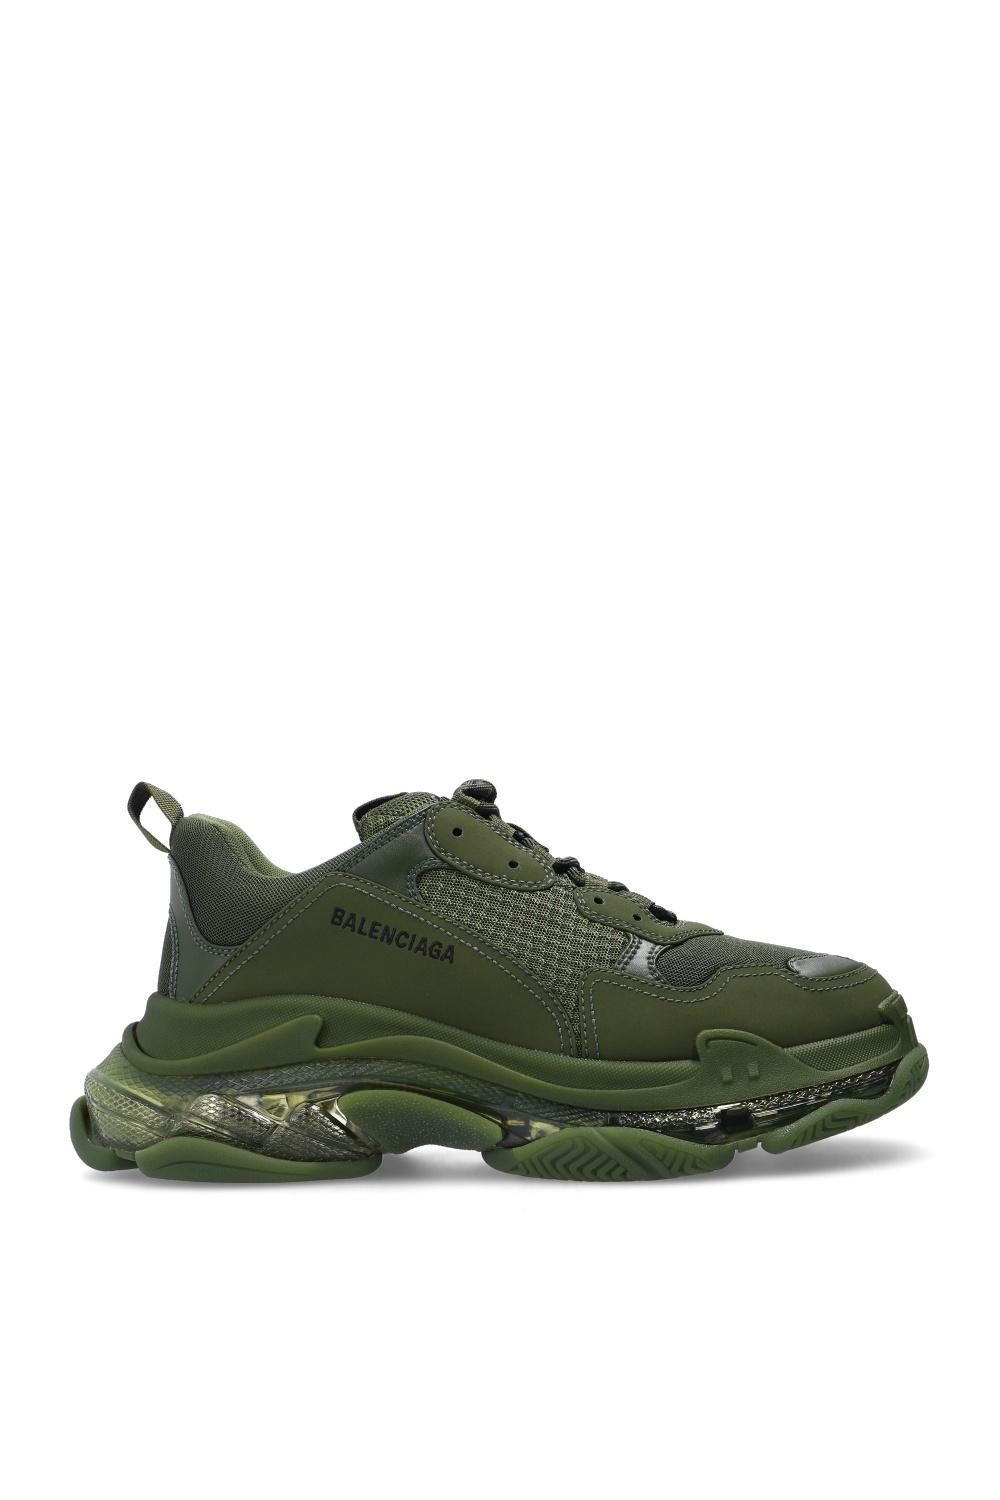 Balenciaga 'triple S' Sneakers in Green for Men - Lyst